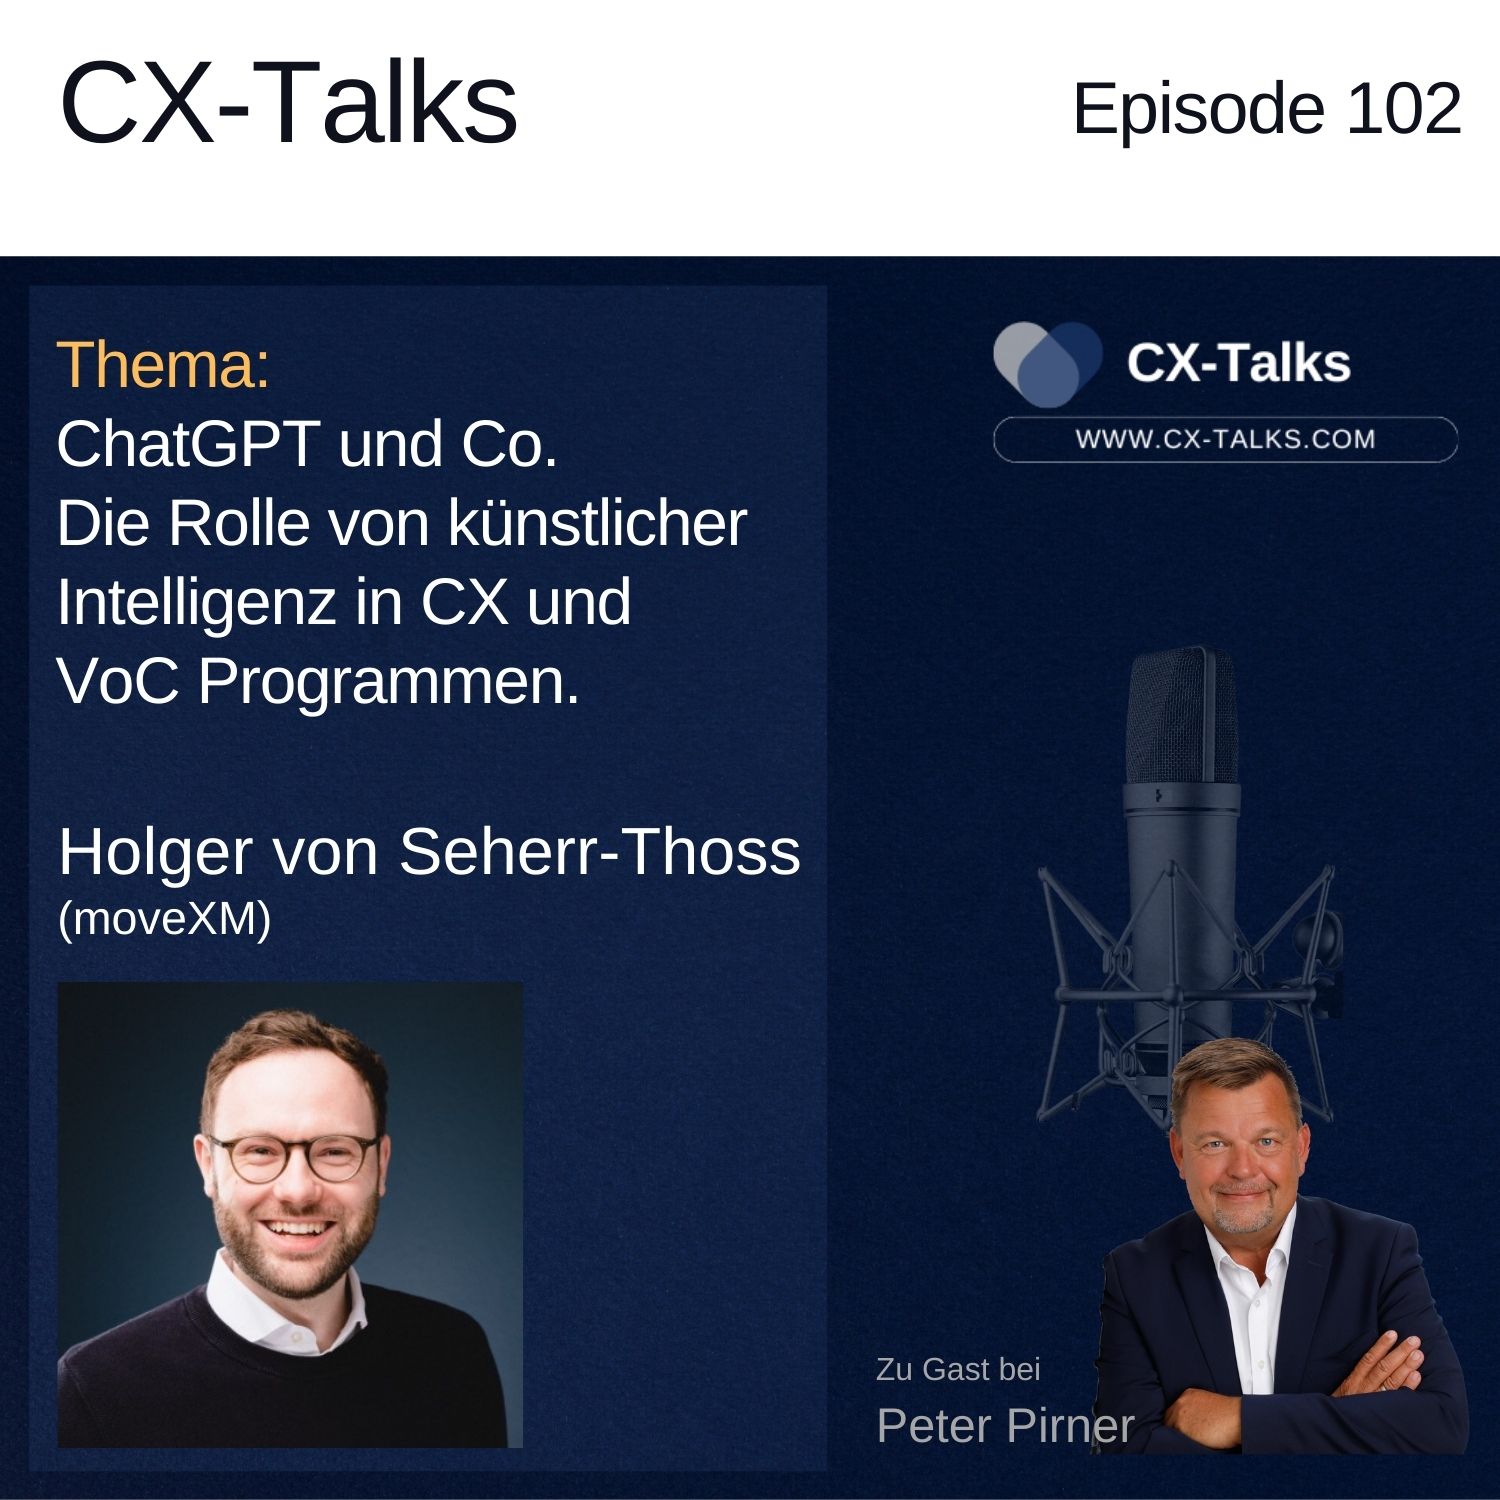 #102 ChatGPT und Co. Die Rolle von künstlicher Intelligenz in CX und VoC Programmen. Mit Holger von Seherr-Thoss